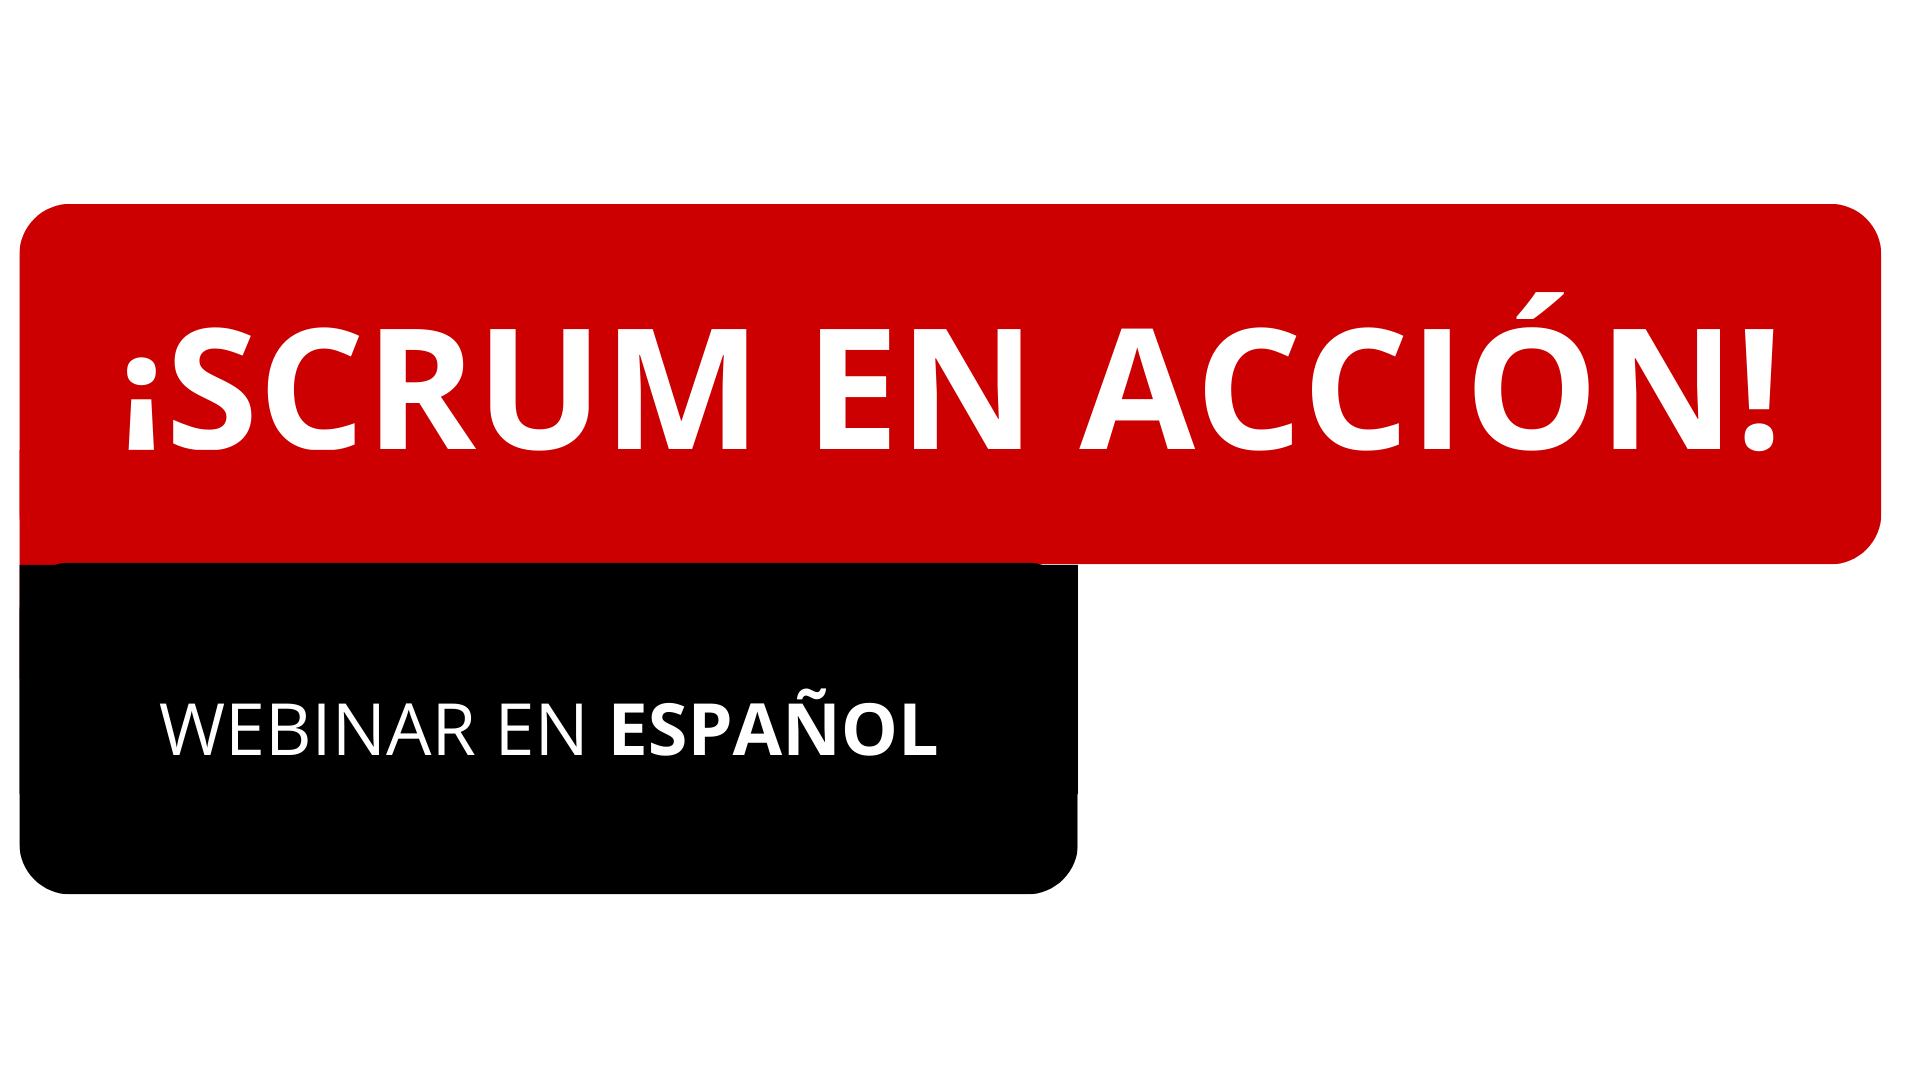 Scrum En Accion: Free Webinar en Espanol